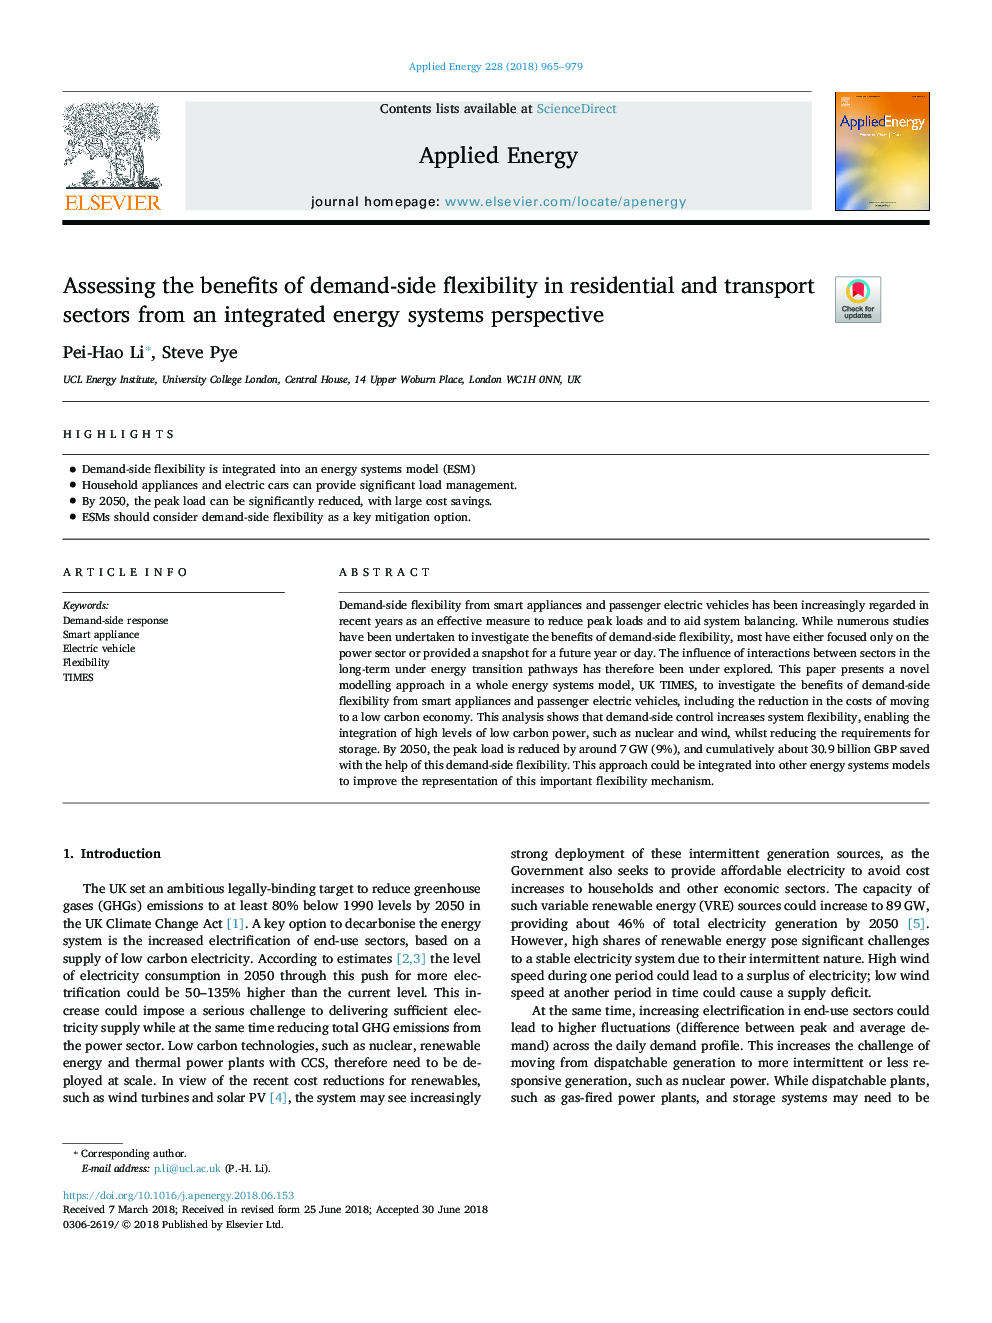 ارزیابی مزایای انعطاف پذیری در بخش تقاضا در بخش های مسکونی و حمل و نقل از دیدگاه سیستم های انرژی یکپارچه 